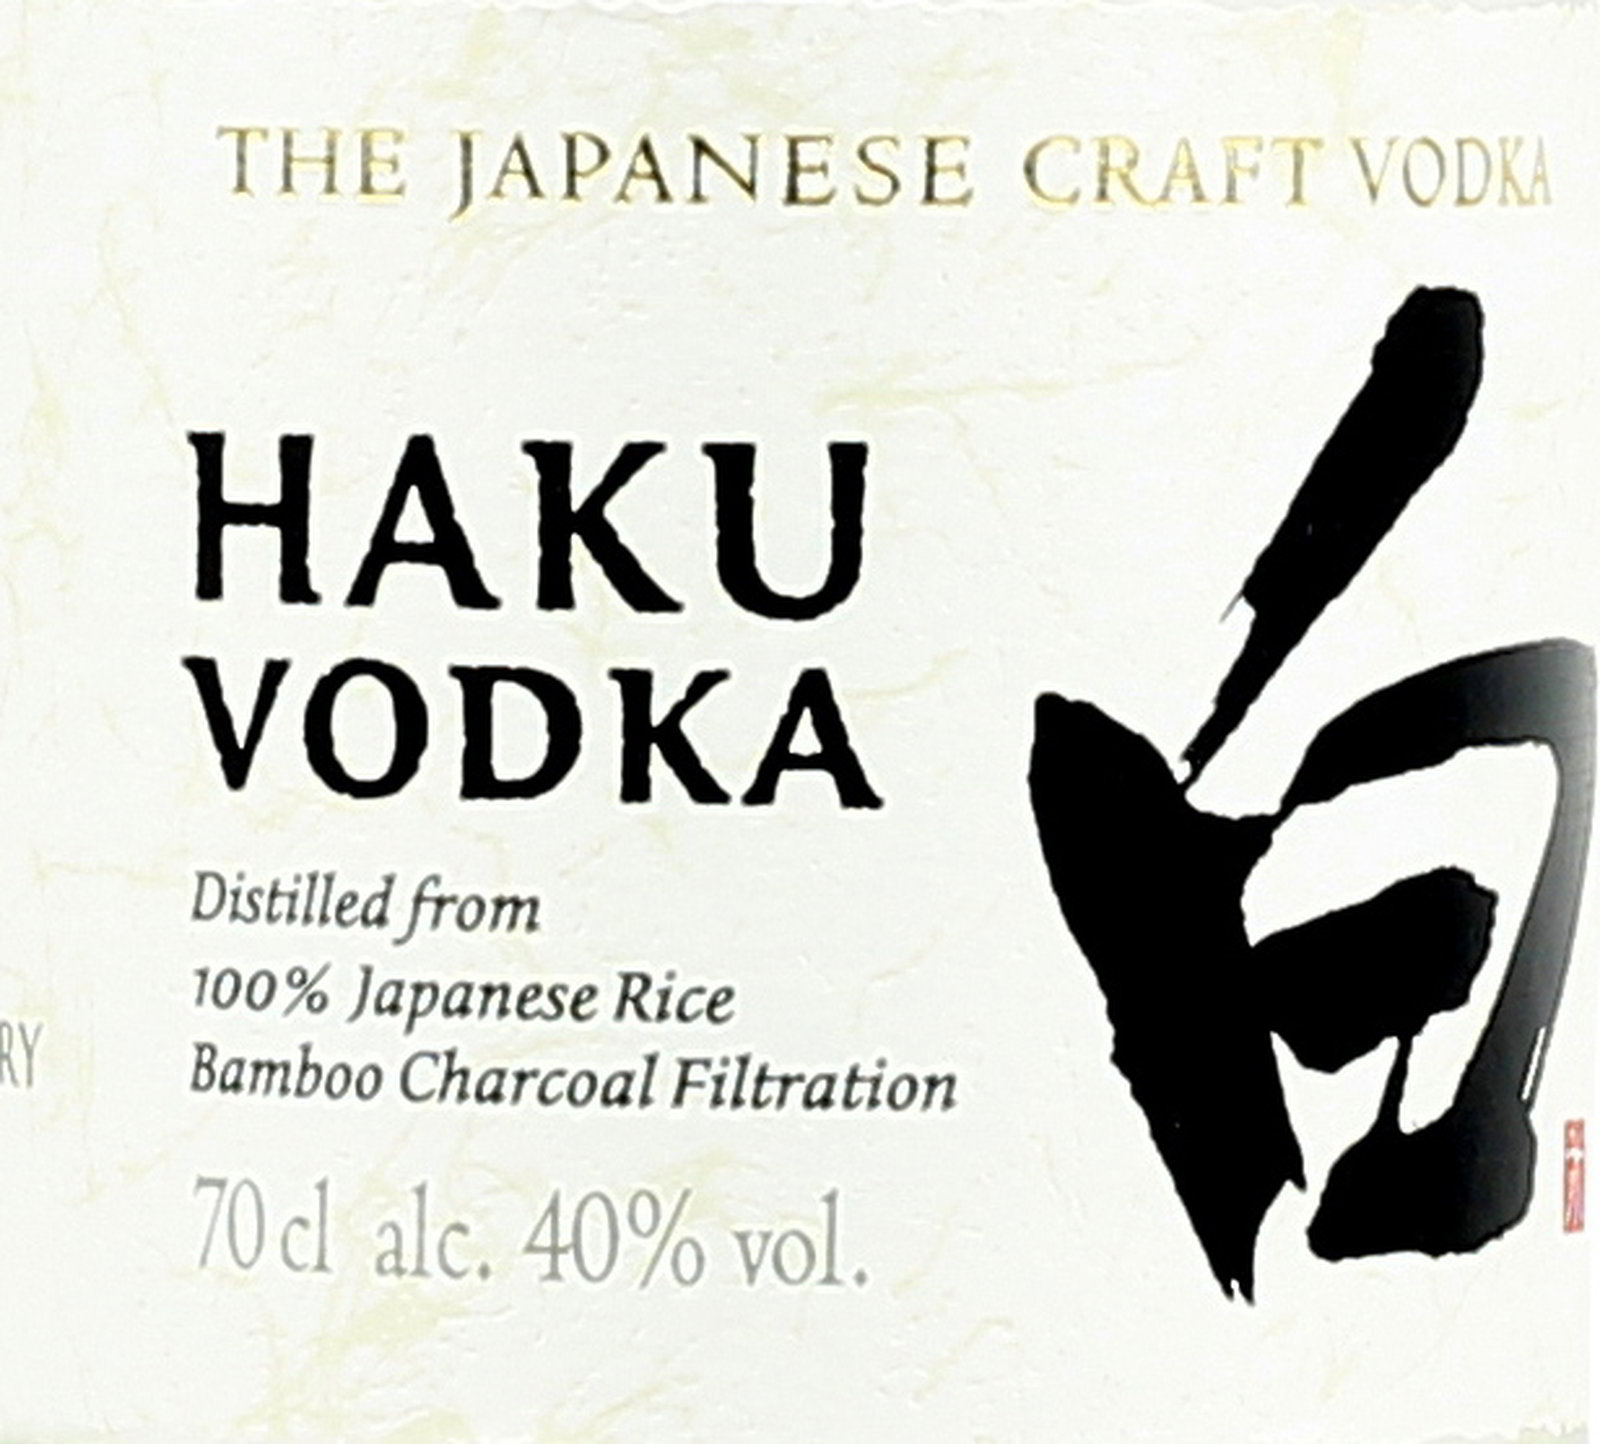 japanese vodka